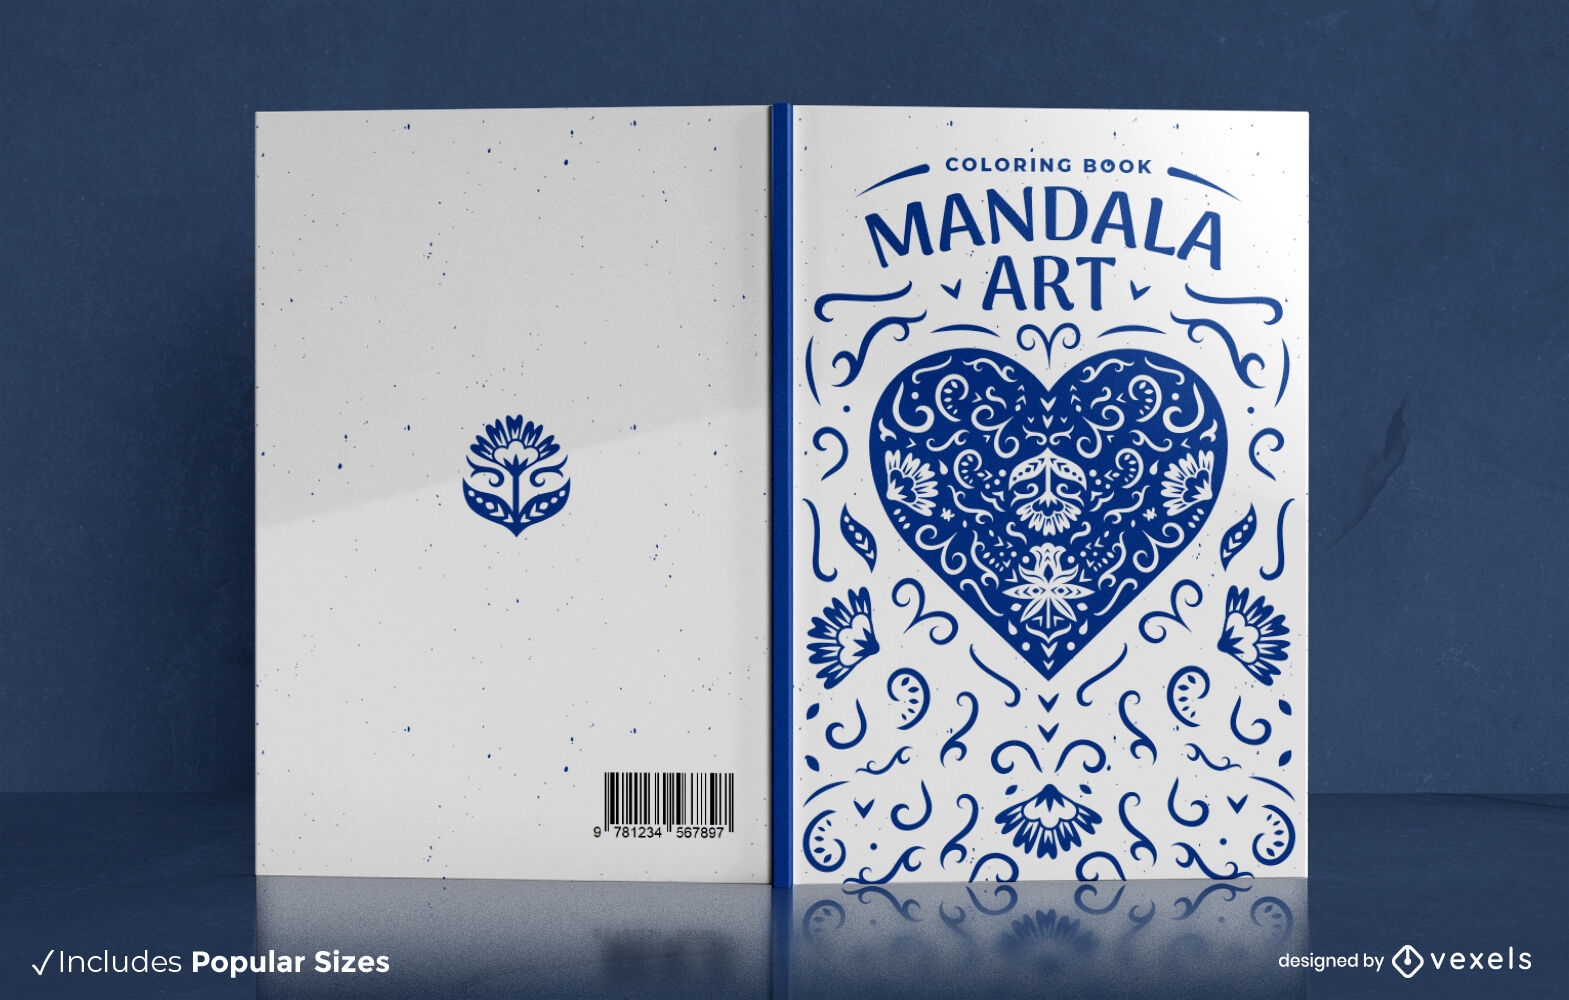 Mandala heart coloring book cover design